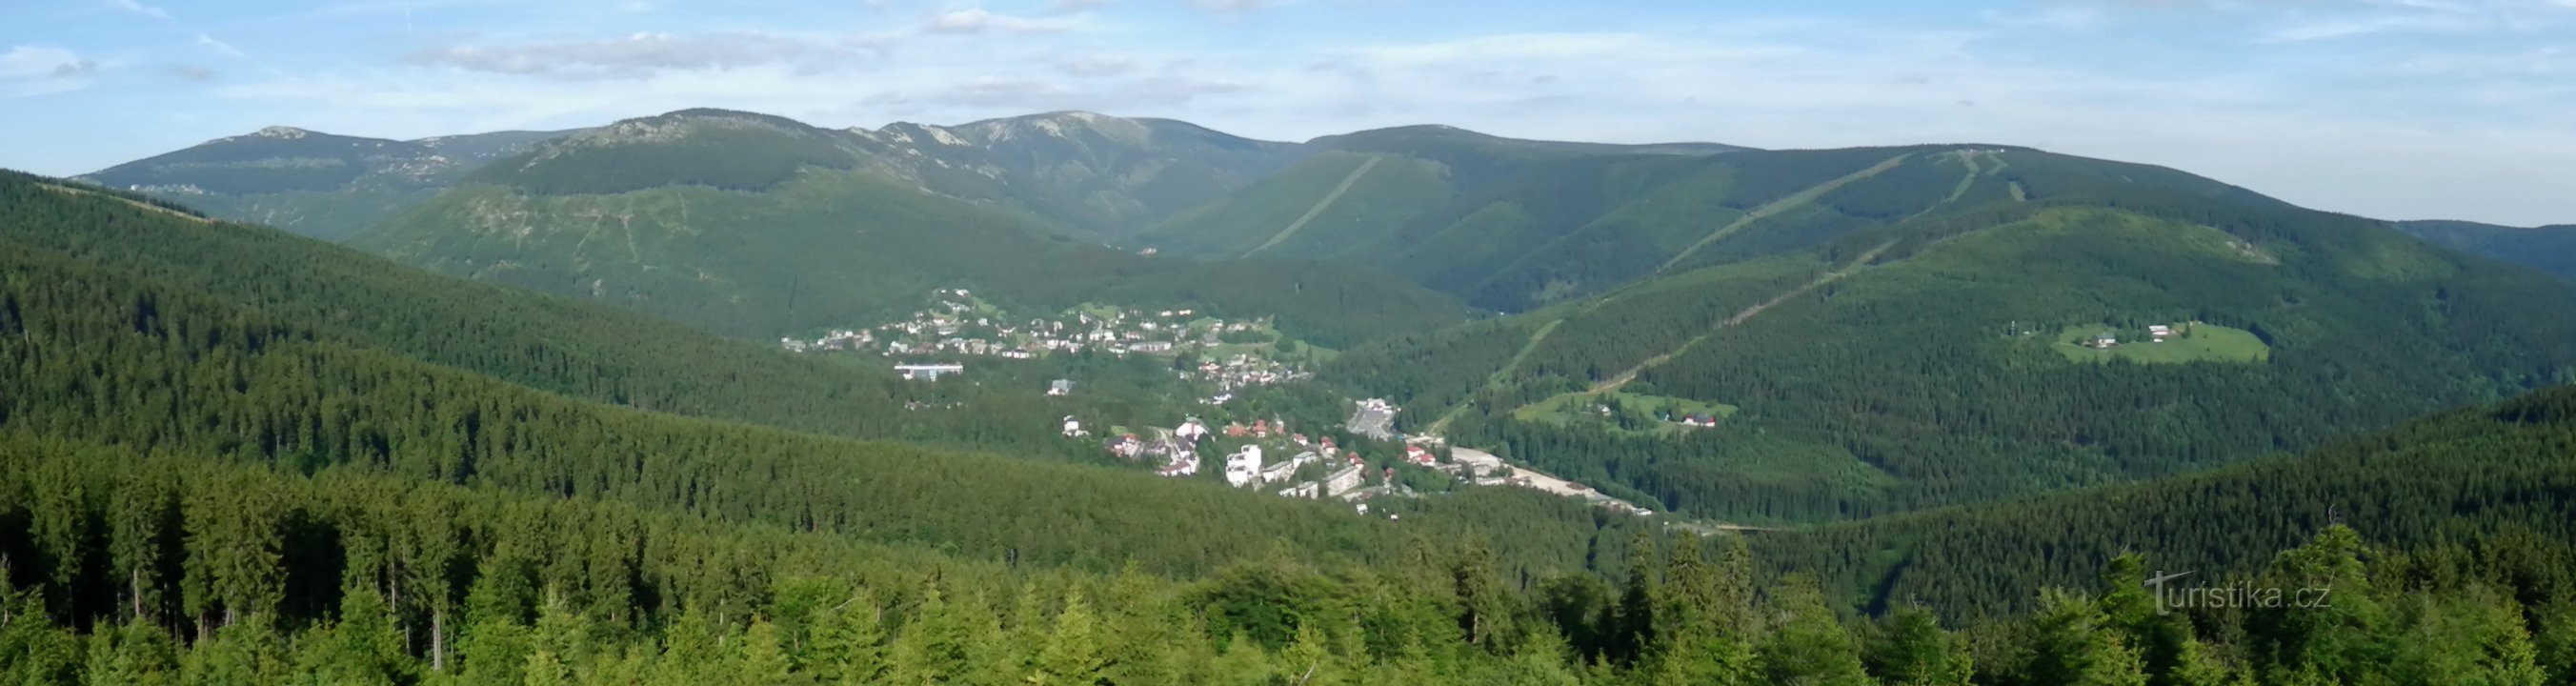 Panoramautsikt från Harrach's Rock (från Malé Špičák till Hromovka), nedanför